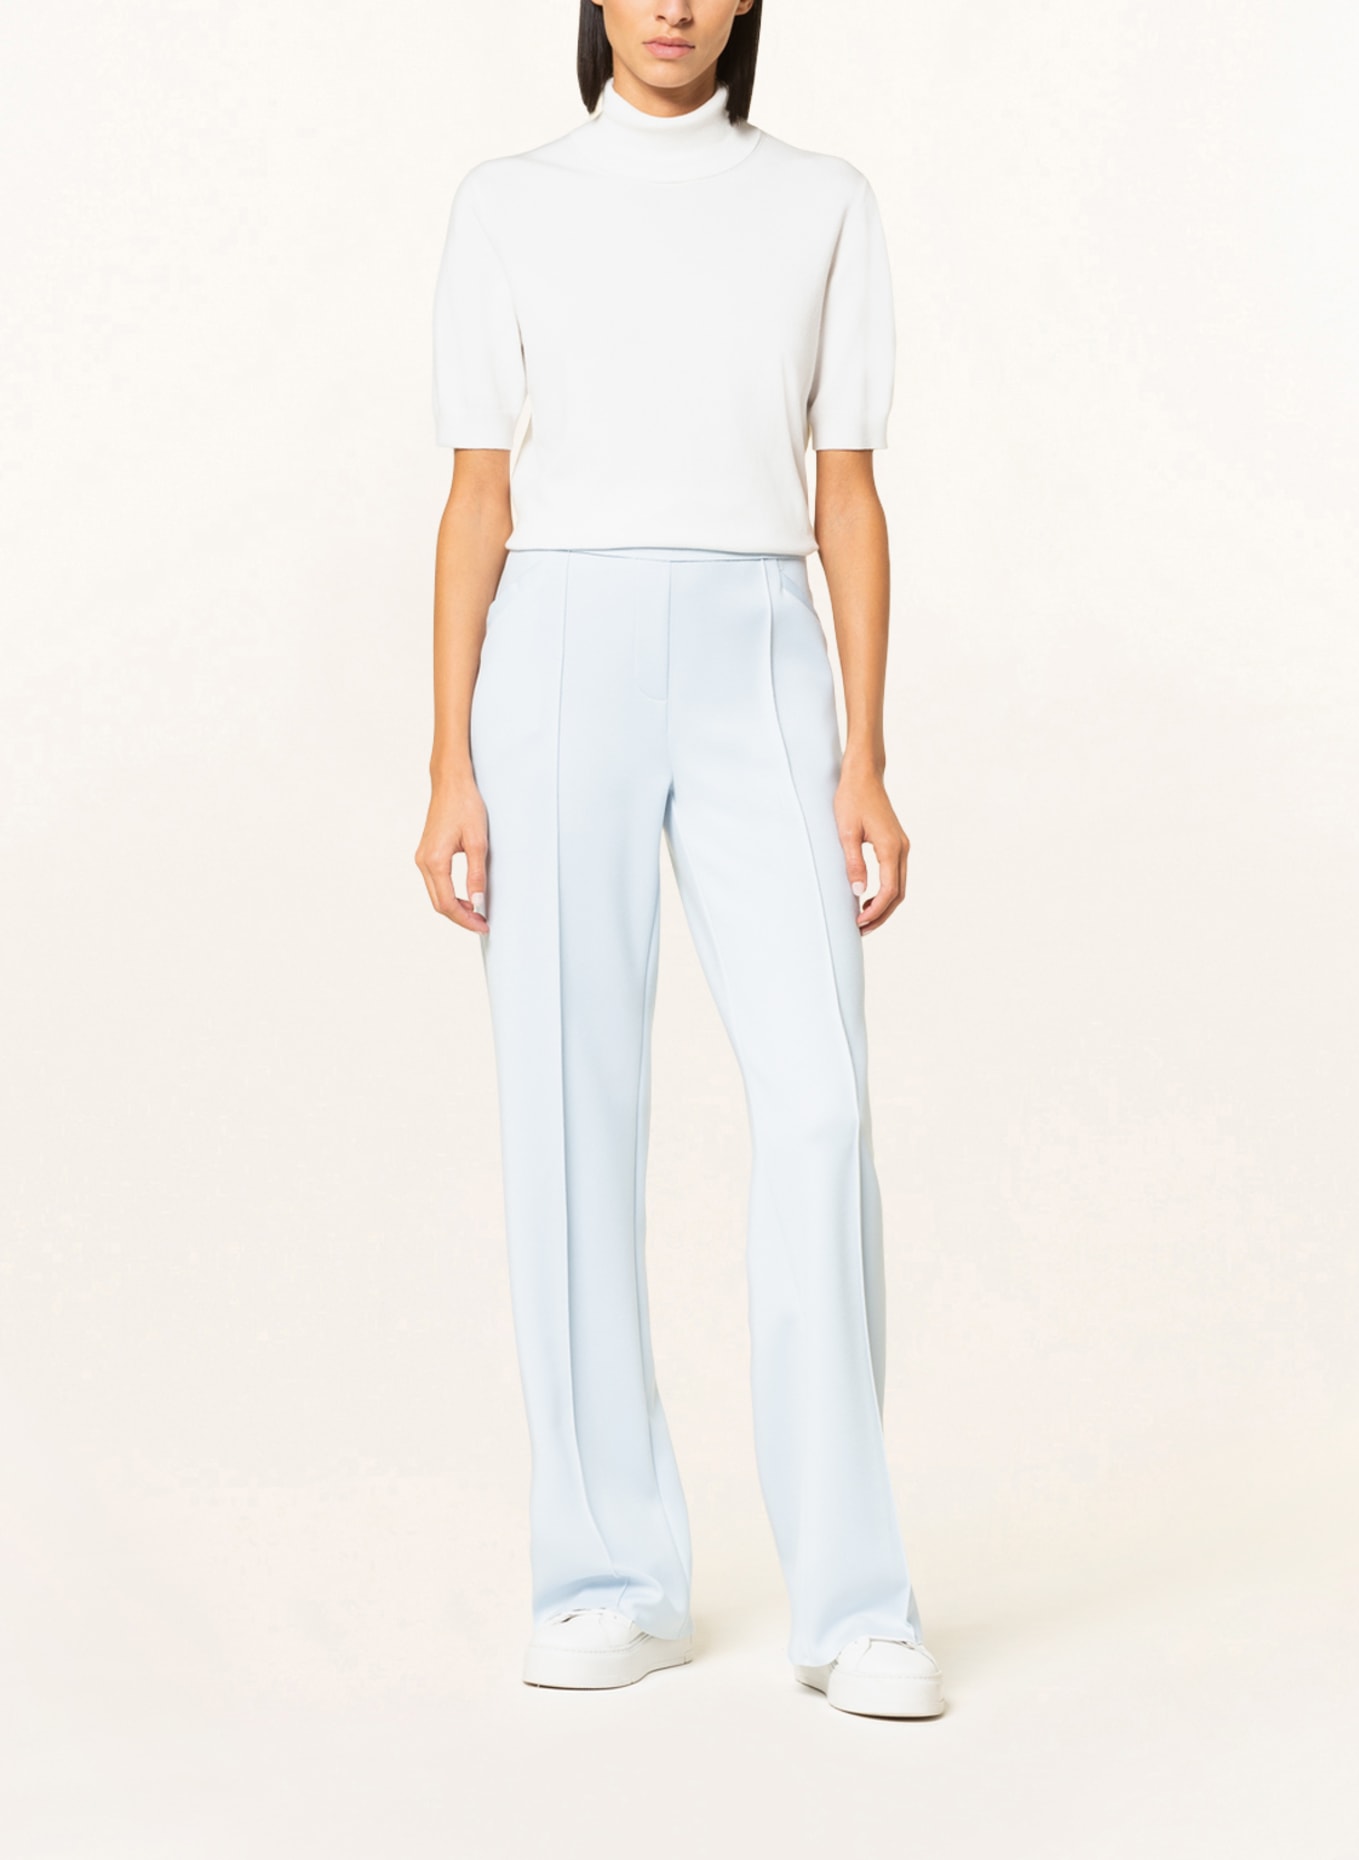 RIANI Sweater, Color: WHITE (Image 2)